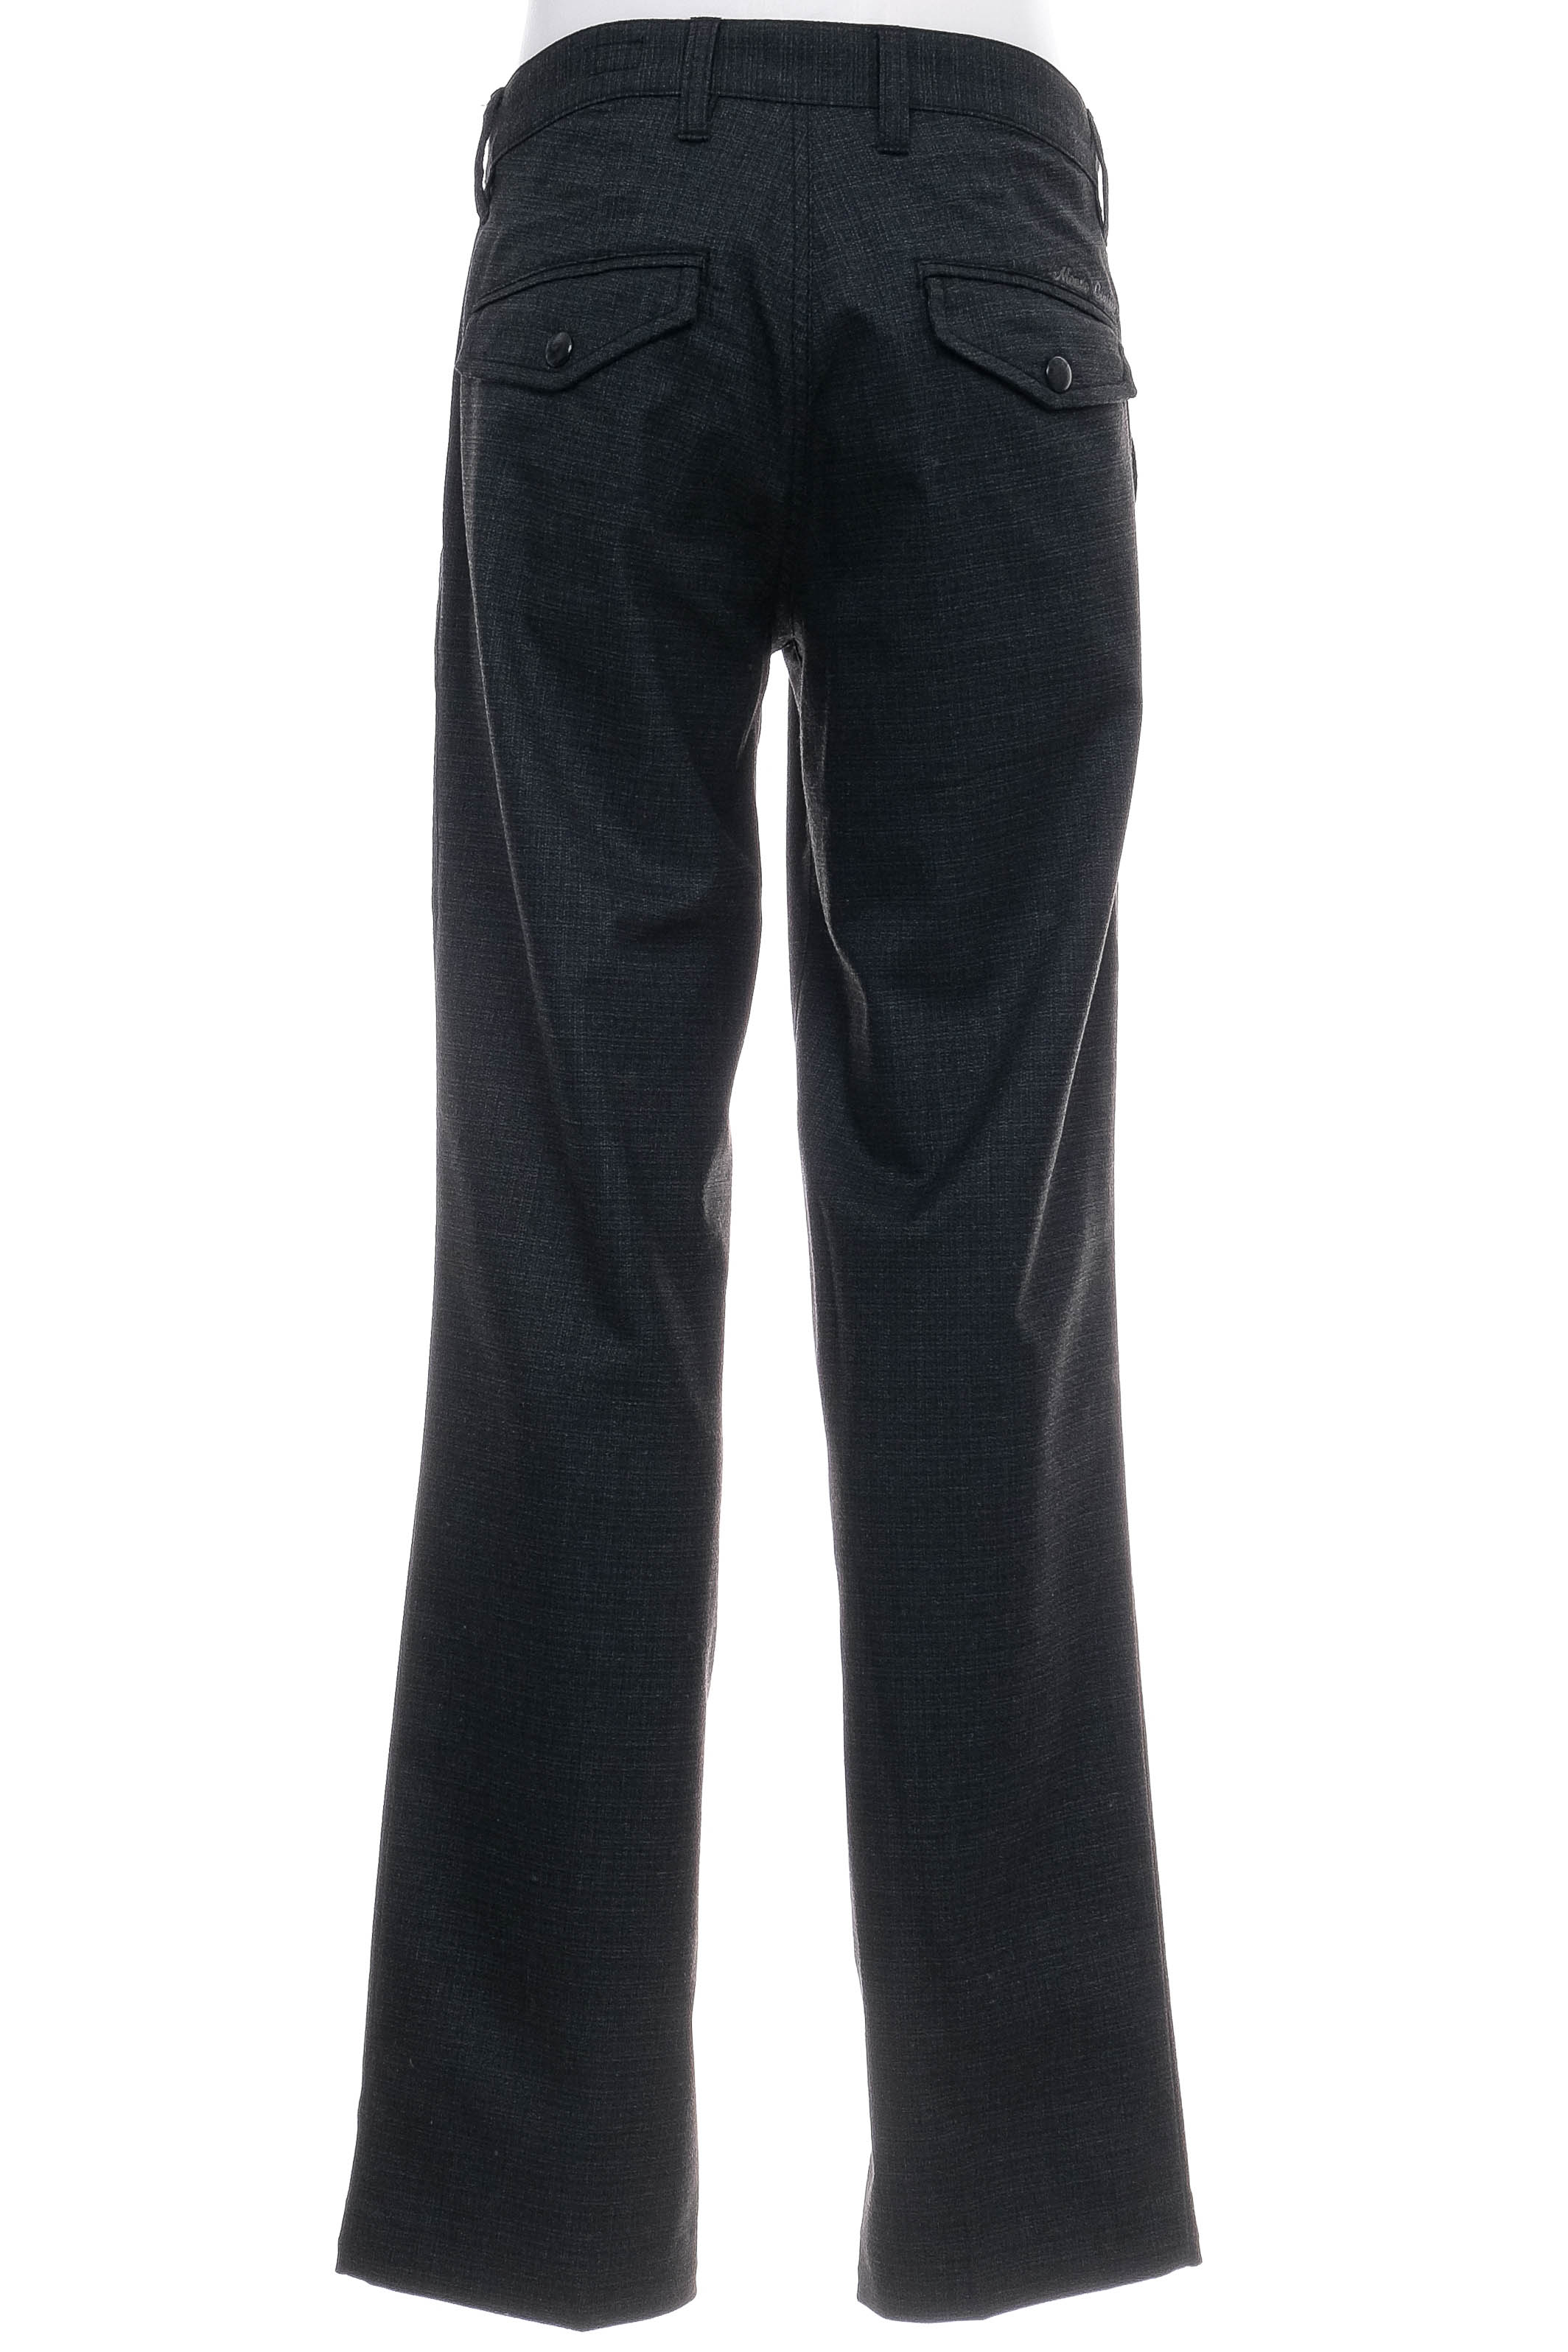 Pantalon pentru bărbați - MONDO - 1